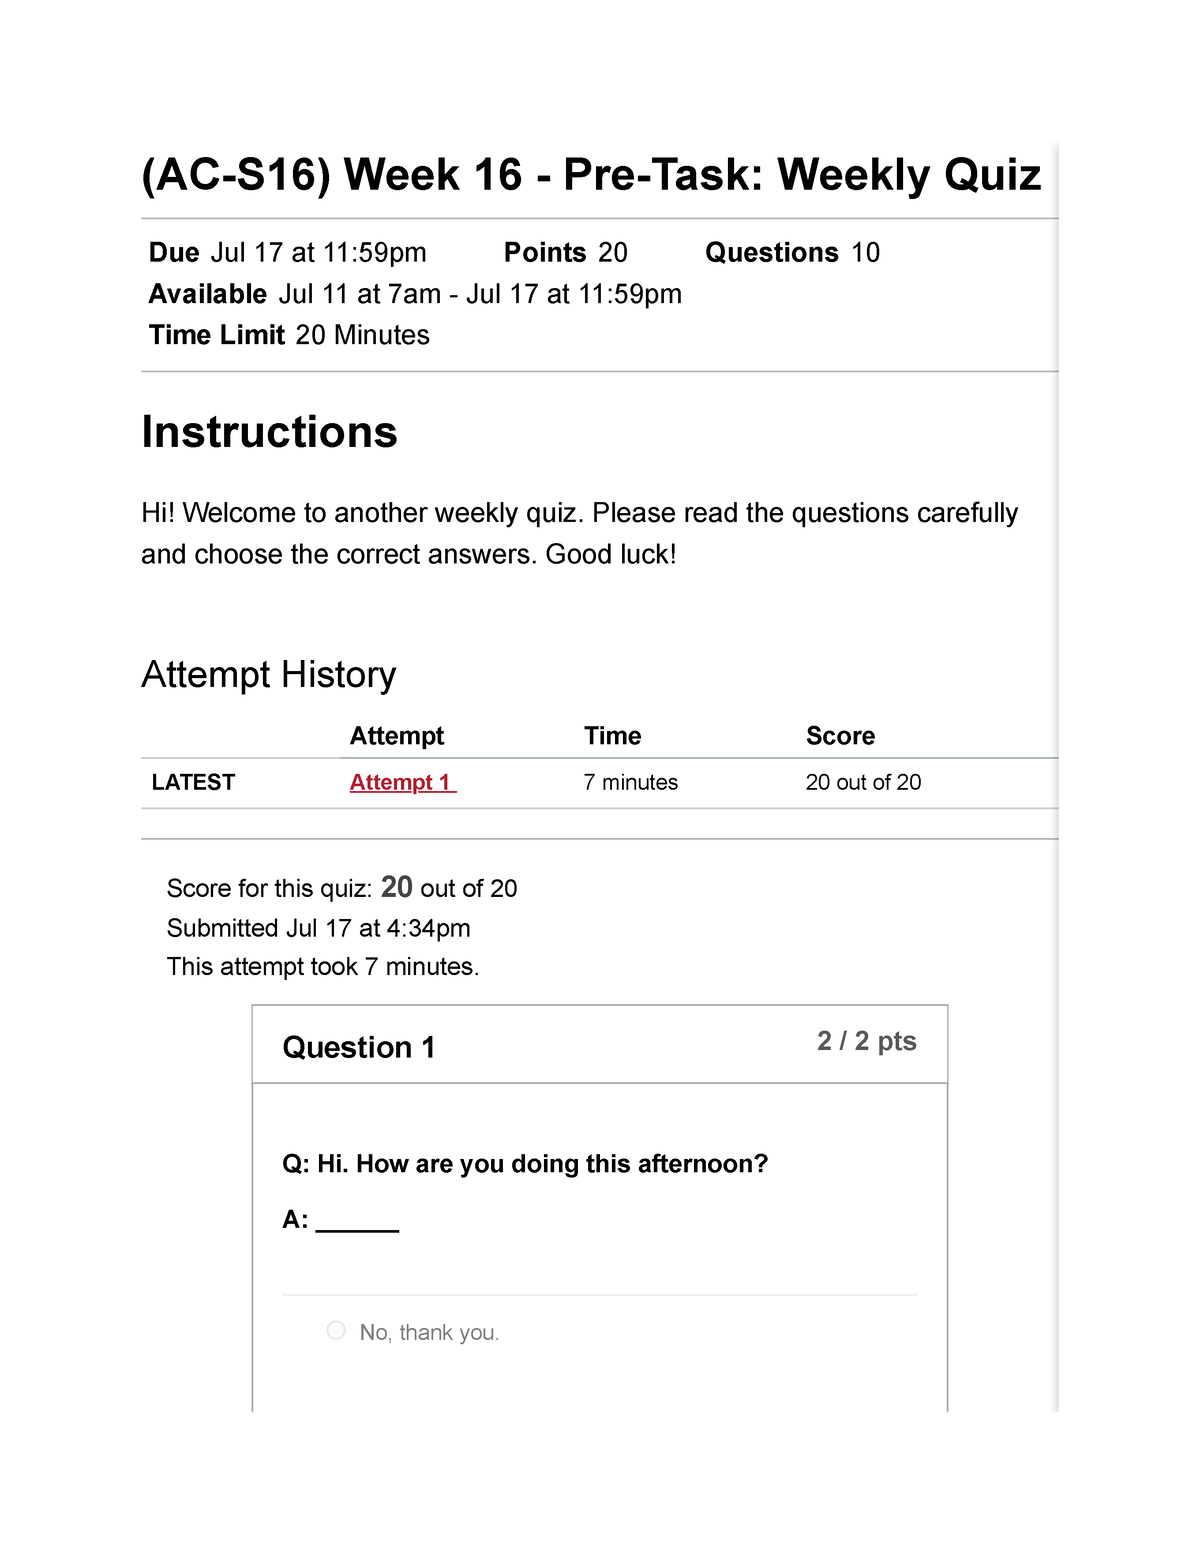 (AC-S16) Week 16 - Pre-Task Weekly Quiz Ingles II (26366) - (AC-S16 ...